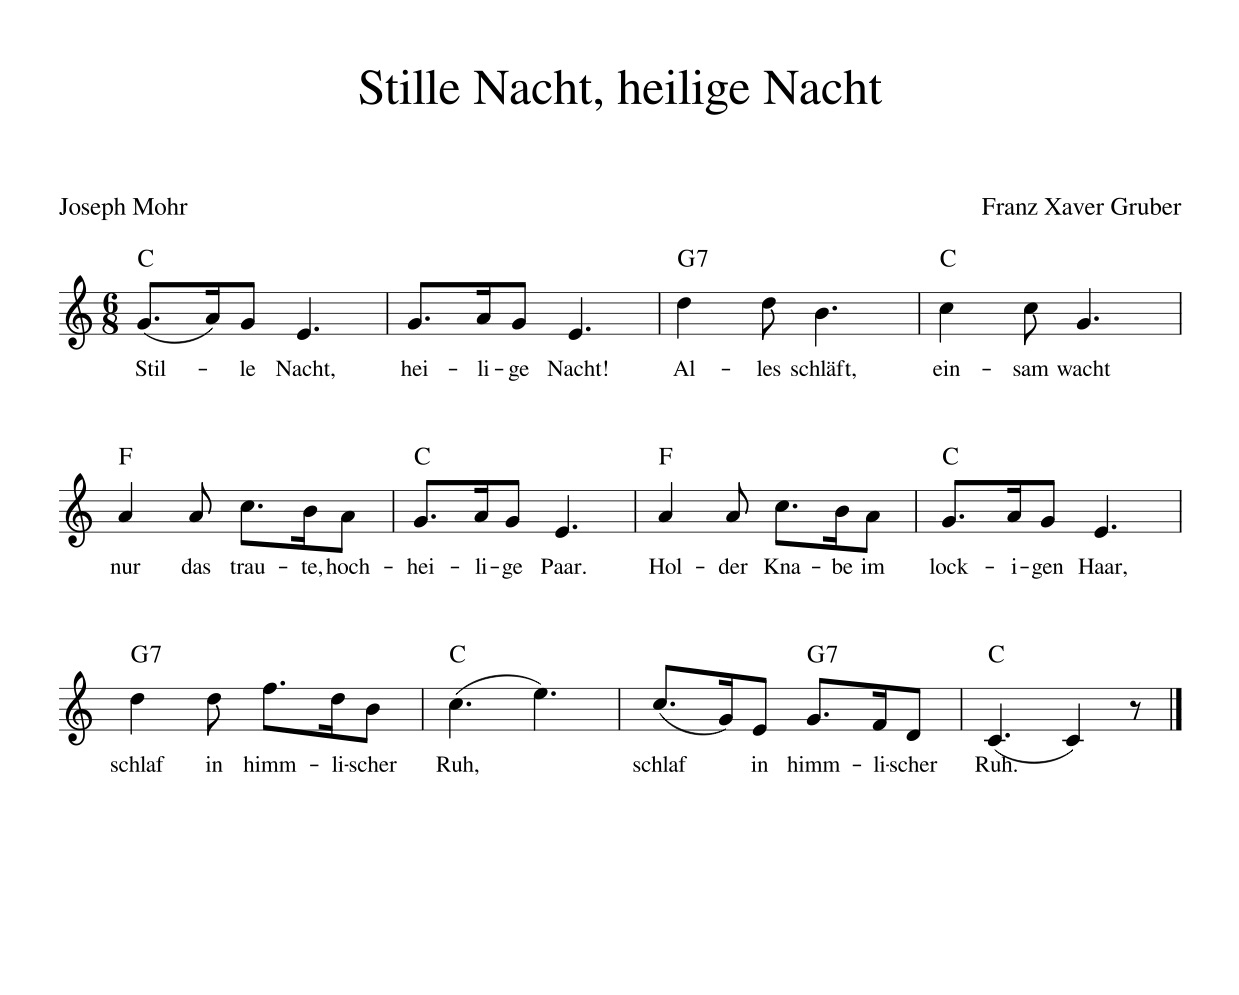 Stille Nacht, Heilige Nacht - Kinderlieder - Noten - Text für Weihnachtslieder Stille Nacht Heilige Nacht Text